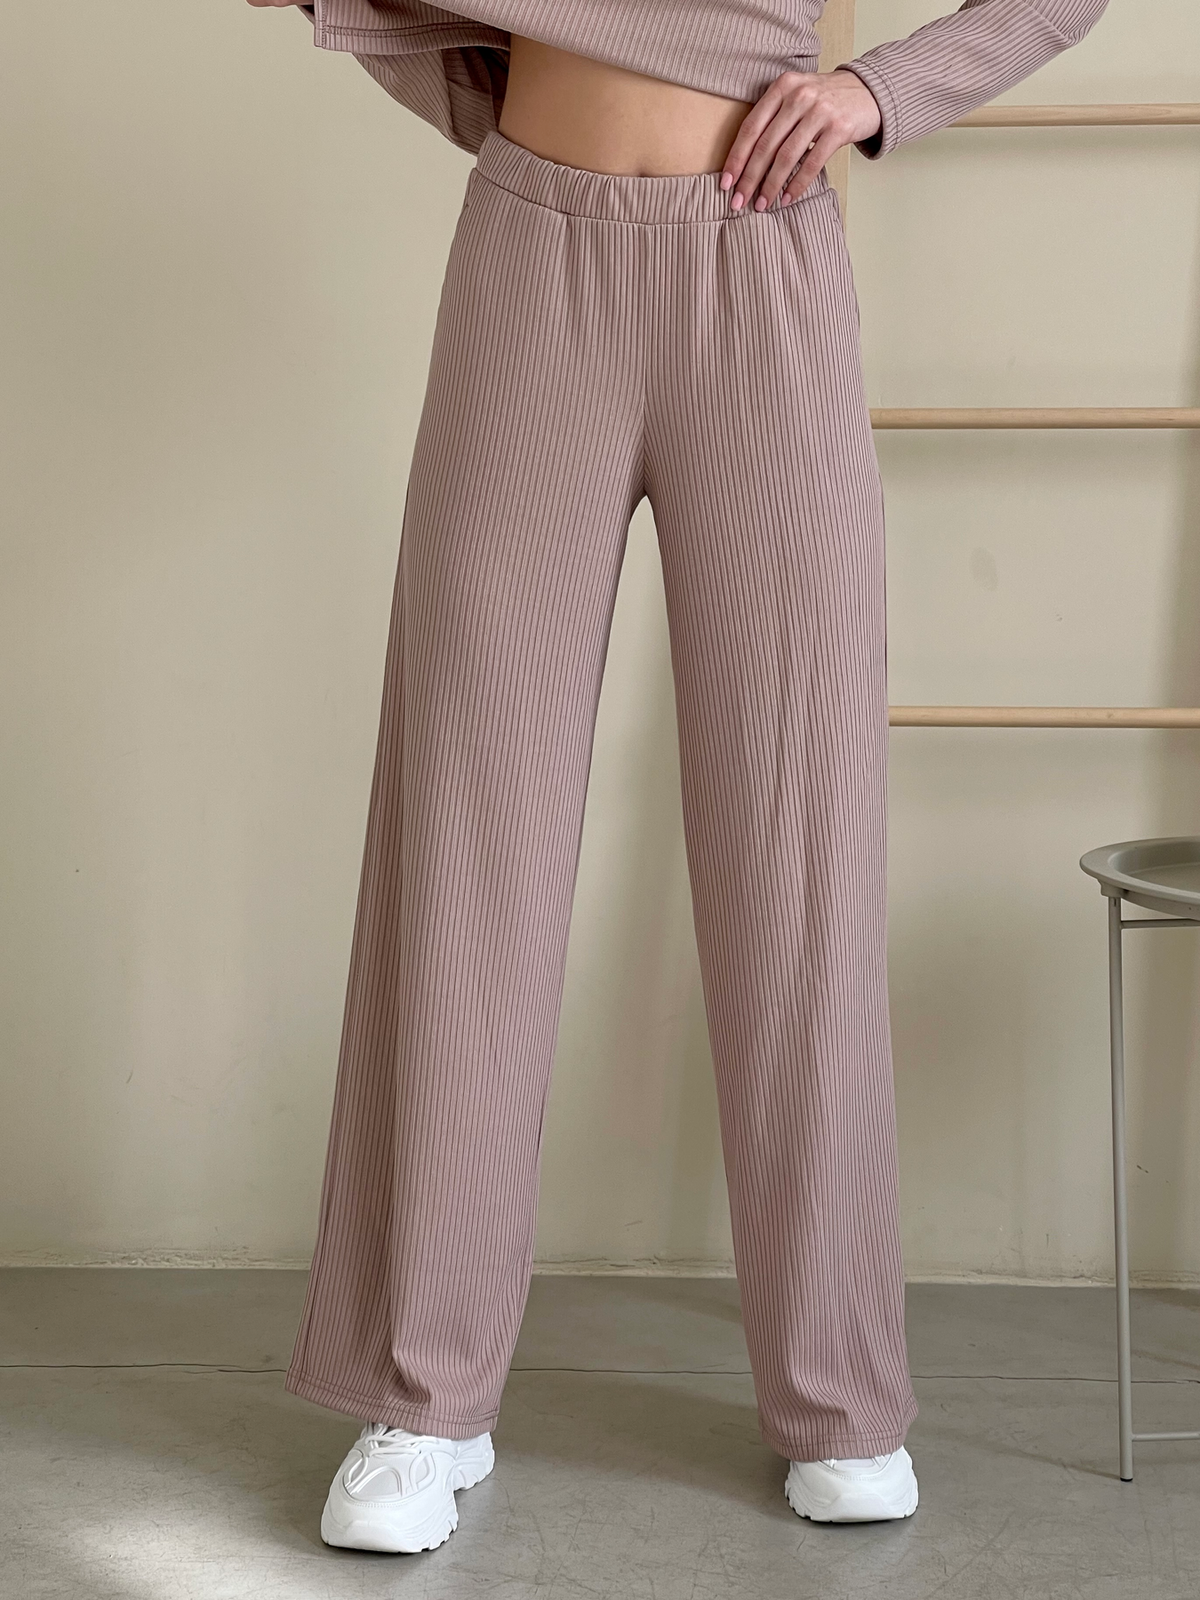 Купить Костюм с широкими брюками в рубчик бежевый Merlini Менто 100001165, размер 42-44 (S-M) в интернет-магазине